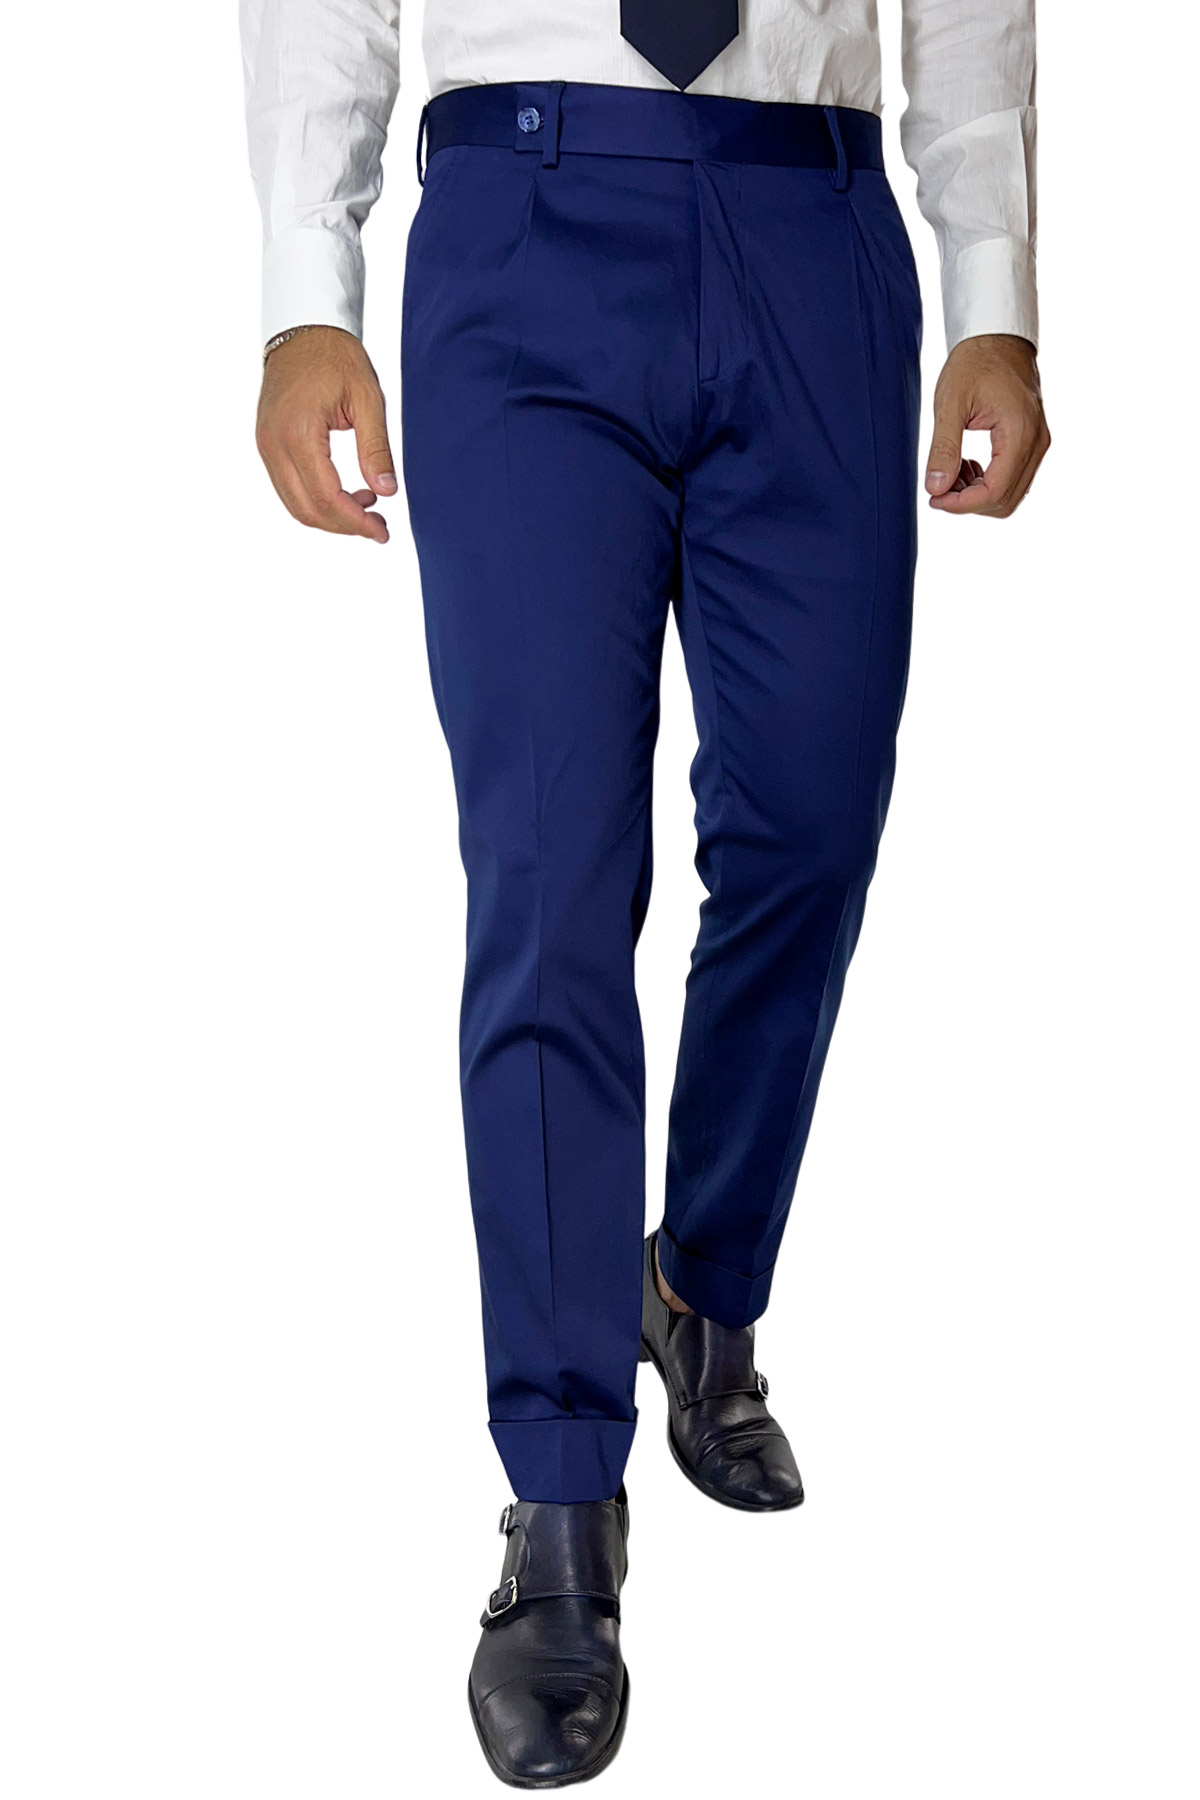 Pantalone uomo Navy blu di cotone leggermente elastico tasca america con una pinces e risvolto 4cm